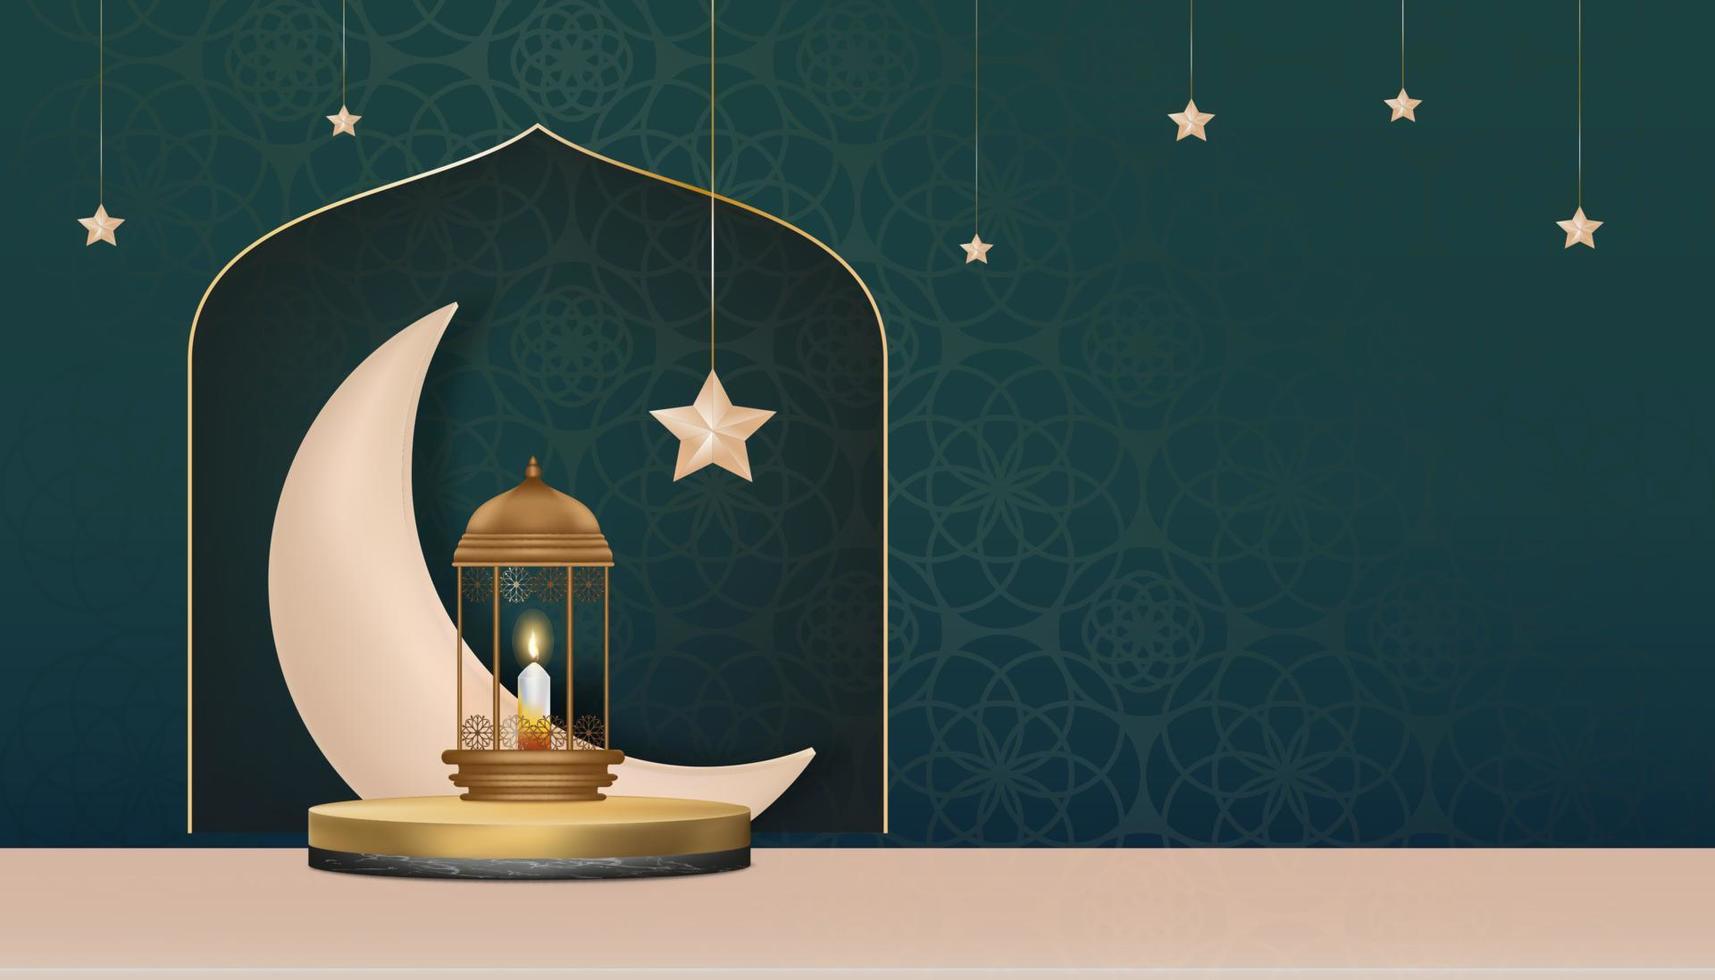 pódio islâmico com lanterna islâmica tradicional com lua crescente, estrela pendurada no fundo verde, pano de fundo vetorial da religião do simbólico muçulmano, eid al fitr, ramadan kareem, eid al adha, eid mubarak vetor